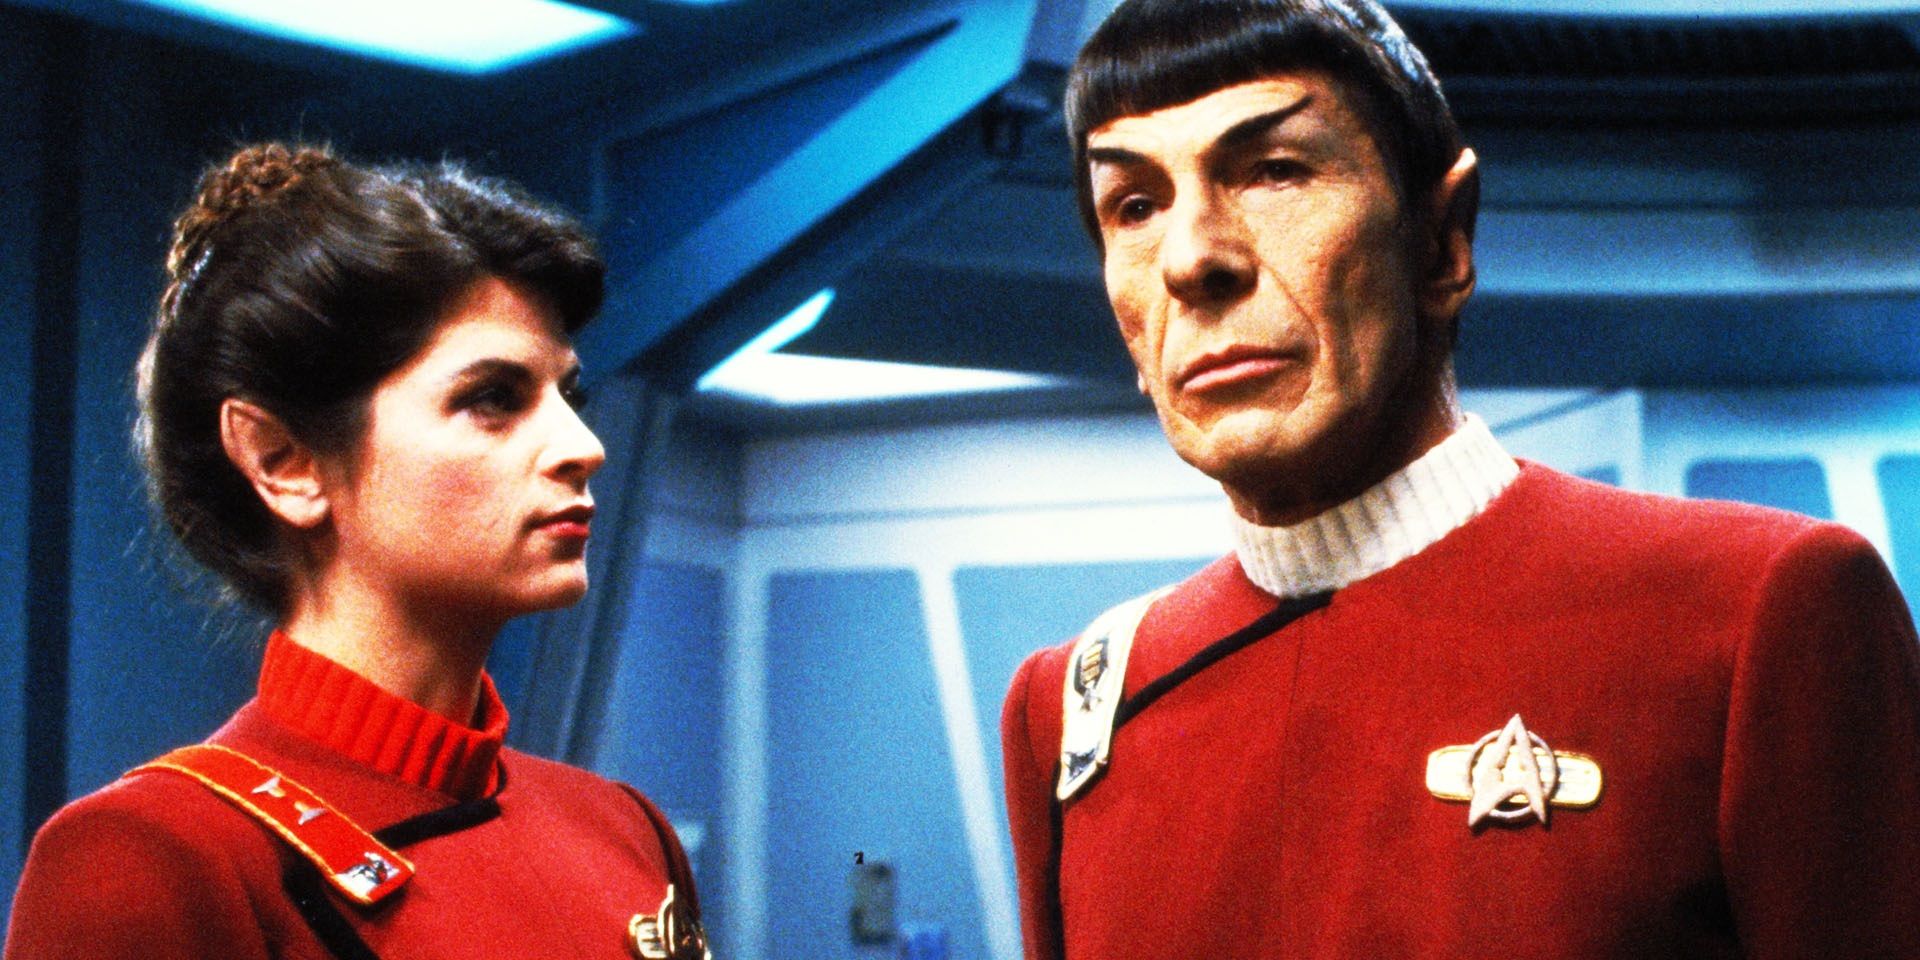 Leonard Nimoy as Spock and Kirstie Alley as Saavik in Star Trek II: The Wrath of Khan.